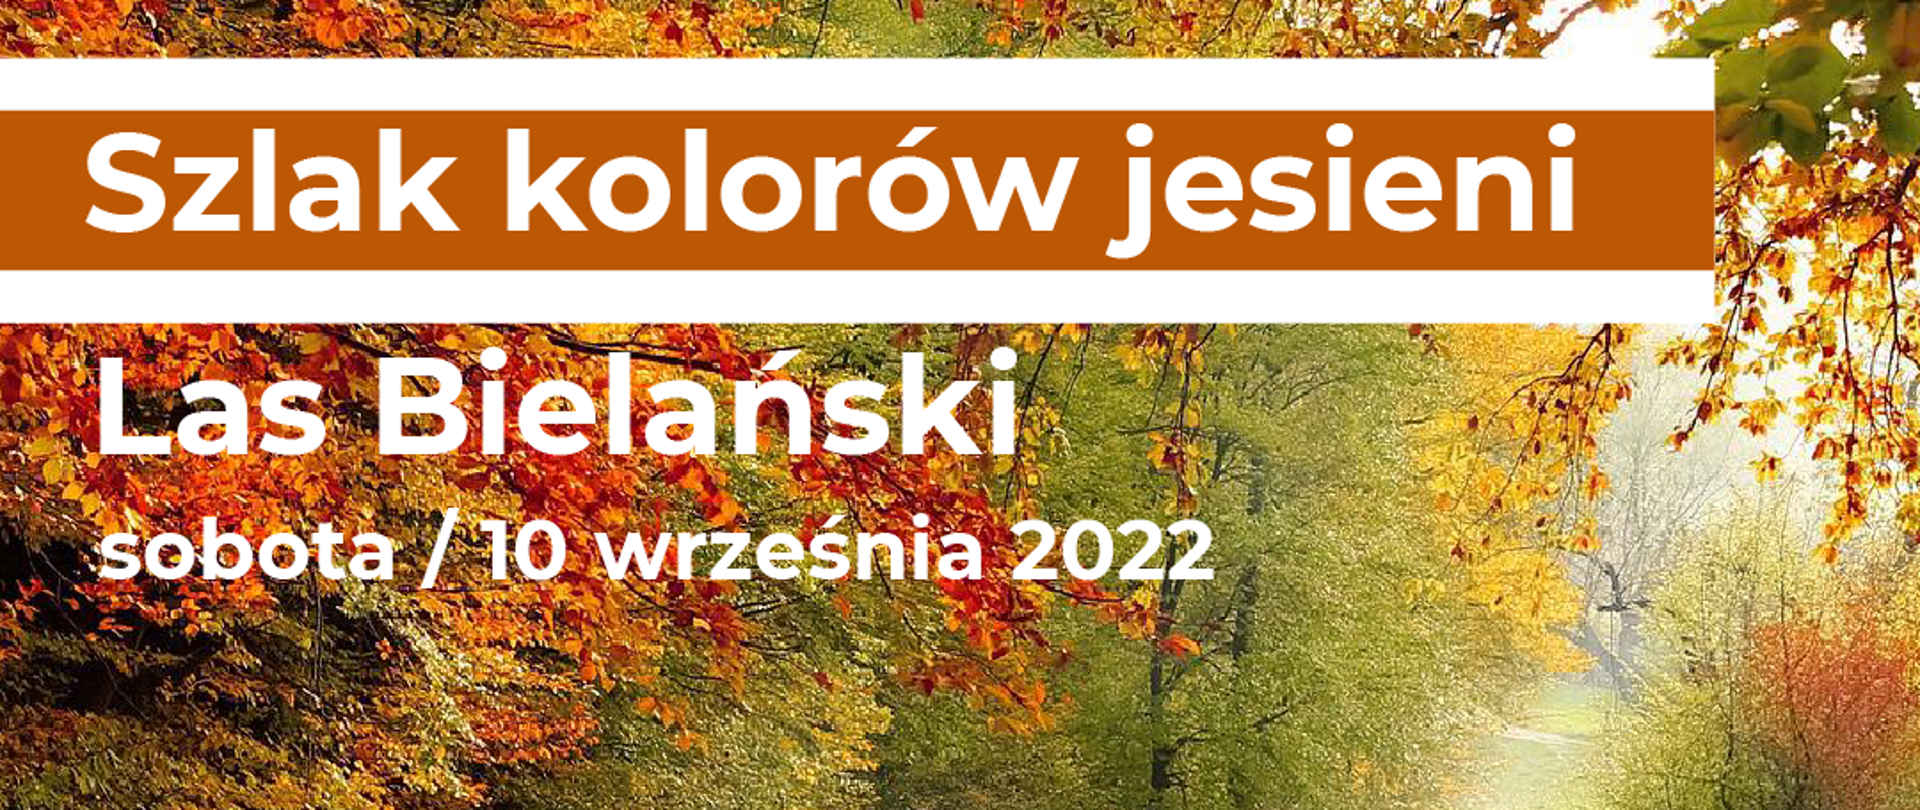 Zdjęcie lasu i napisy: Szlak kolorów jesieni, Las Bielański, sobota 10 września 2022